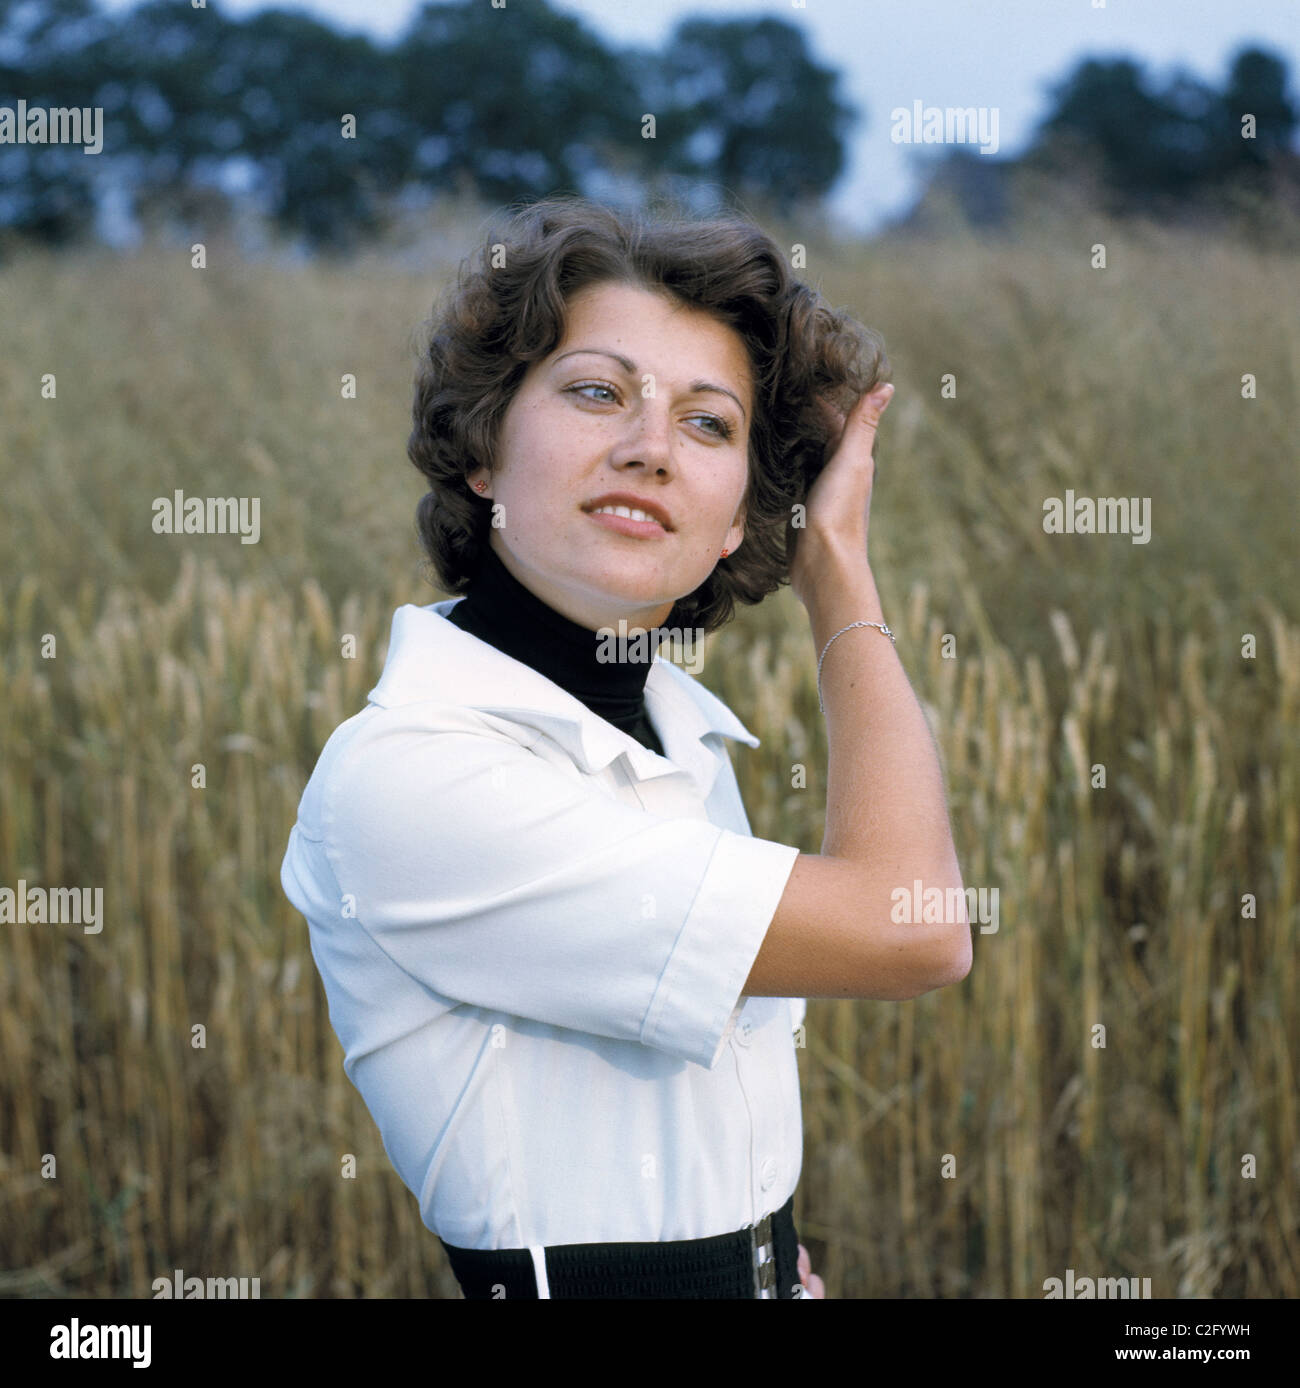 Siebziger Jahre, Menschen, junge Frau, Portraet, mittellanges Haar, Locken Stock Photo